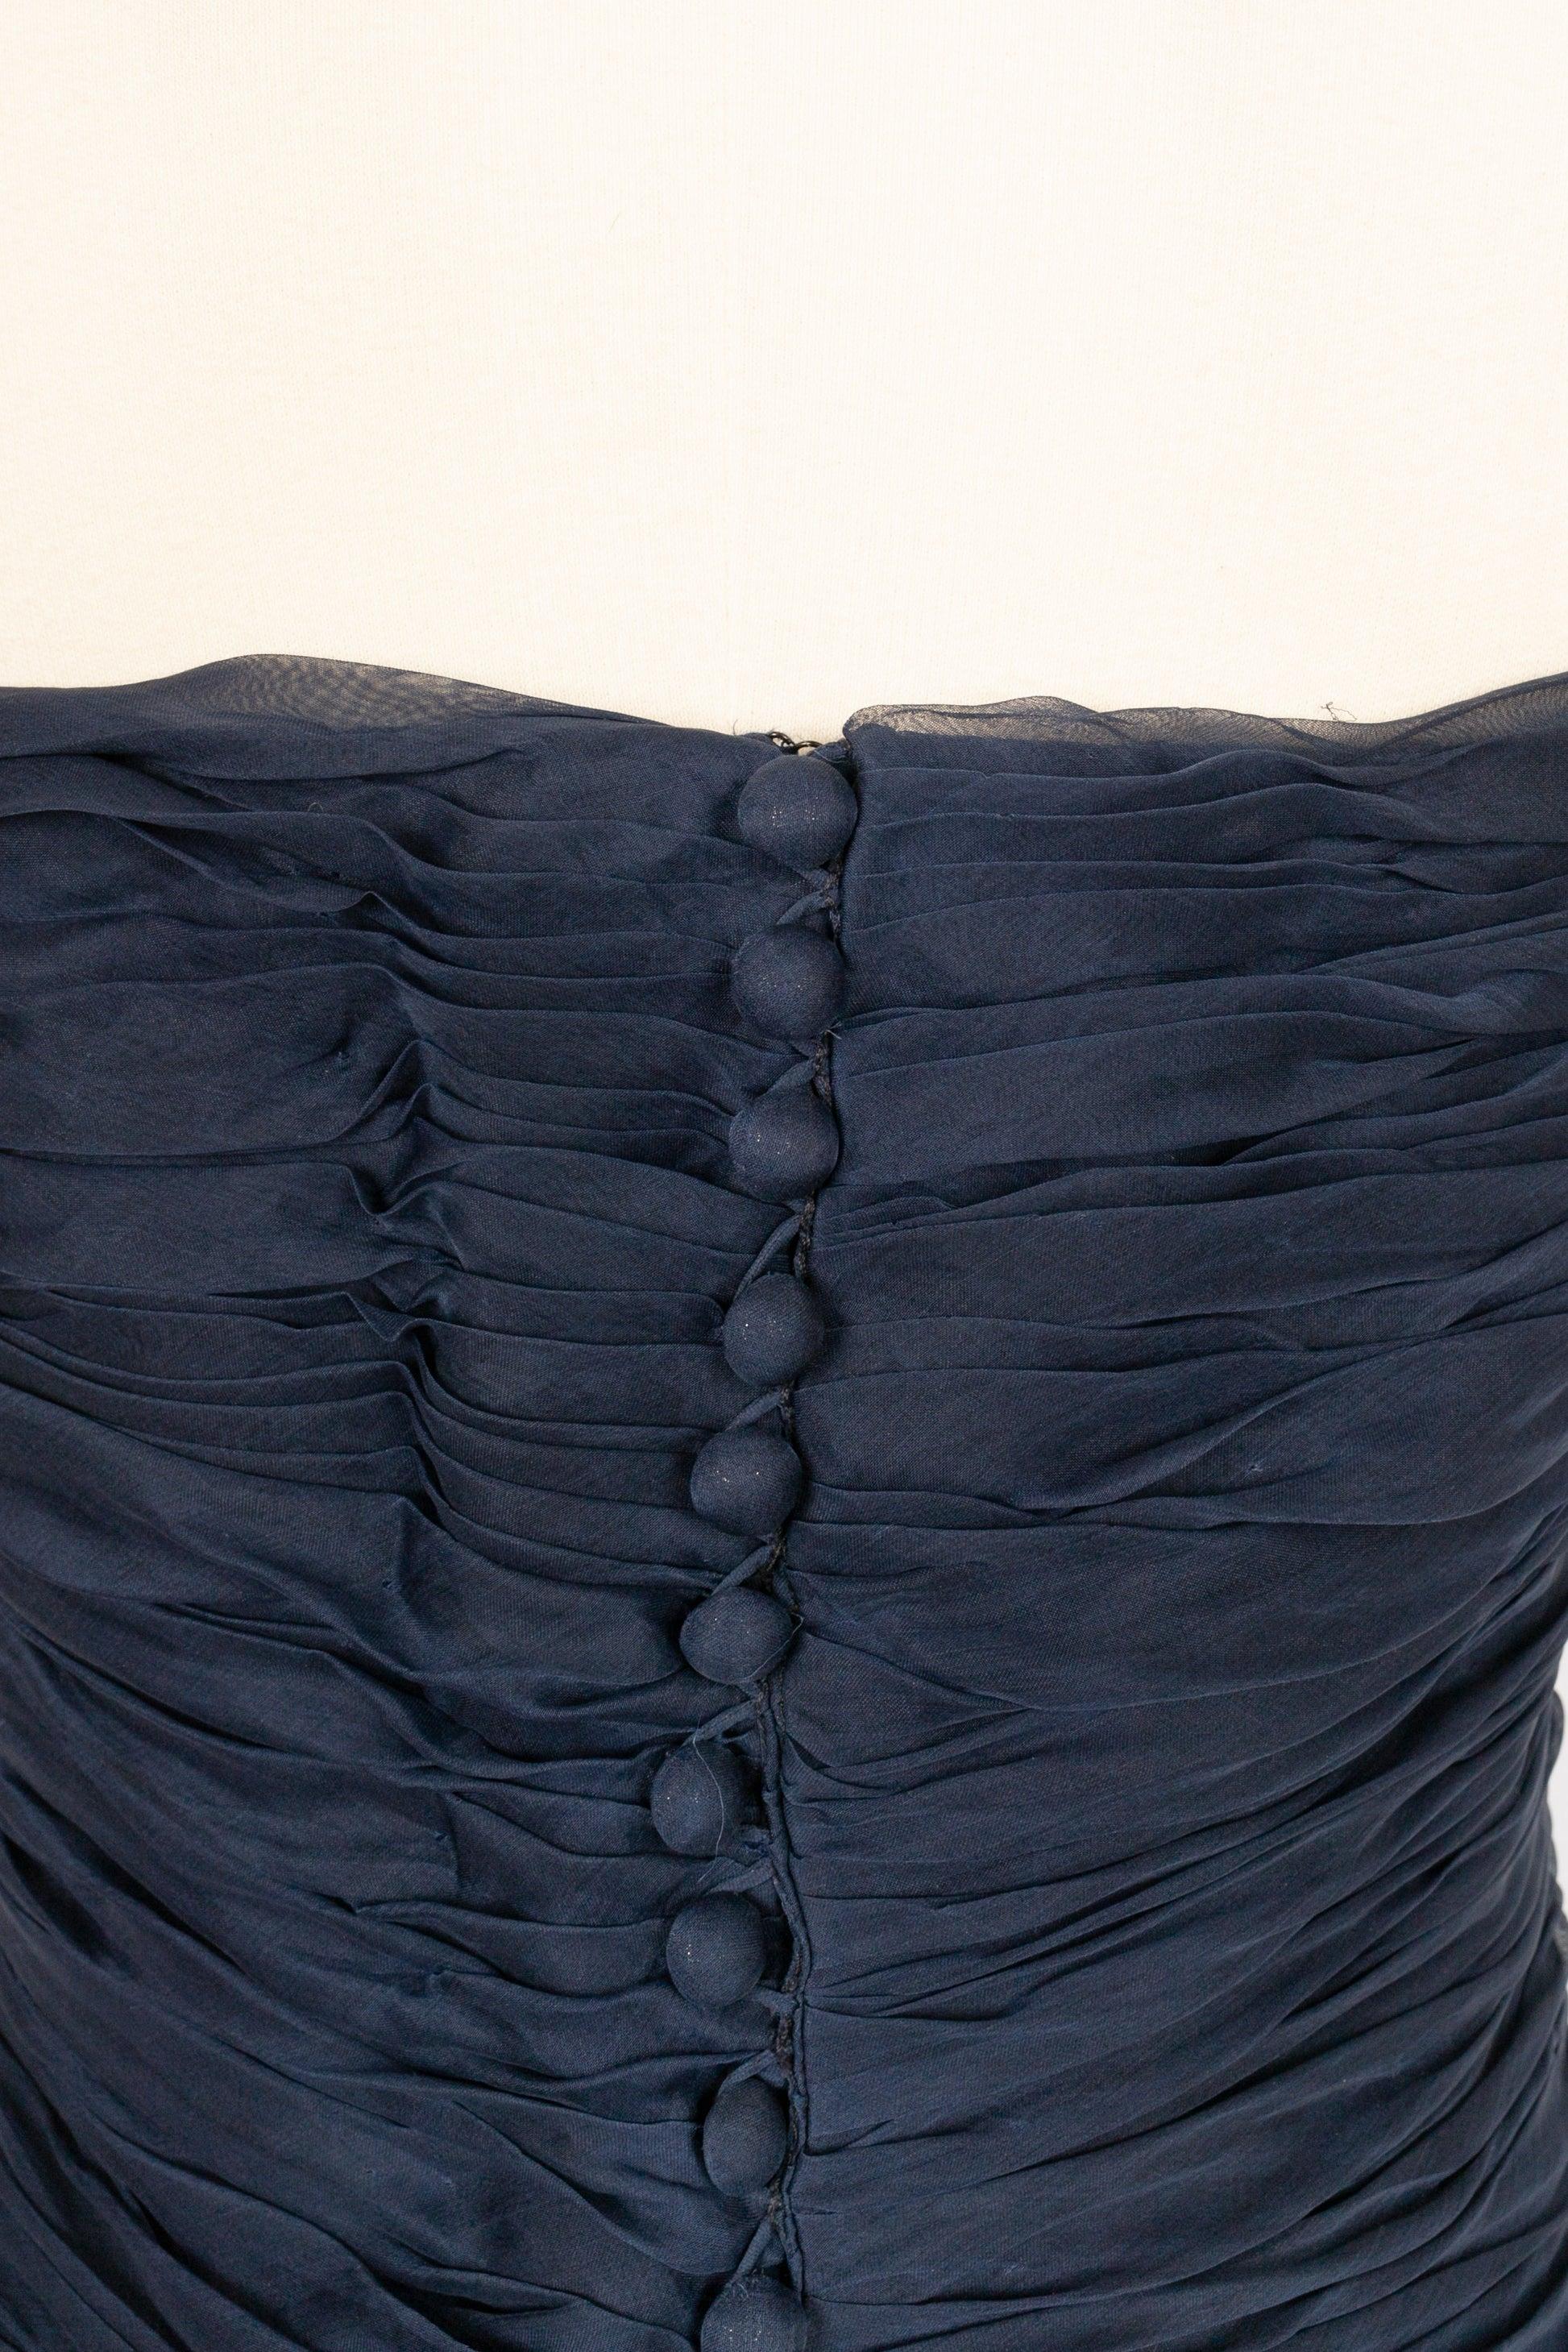 Chanel Long Bustier Dress in Navy Blue Pleated Silk Taffeta 2